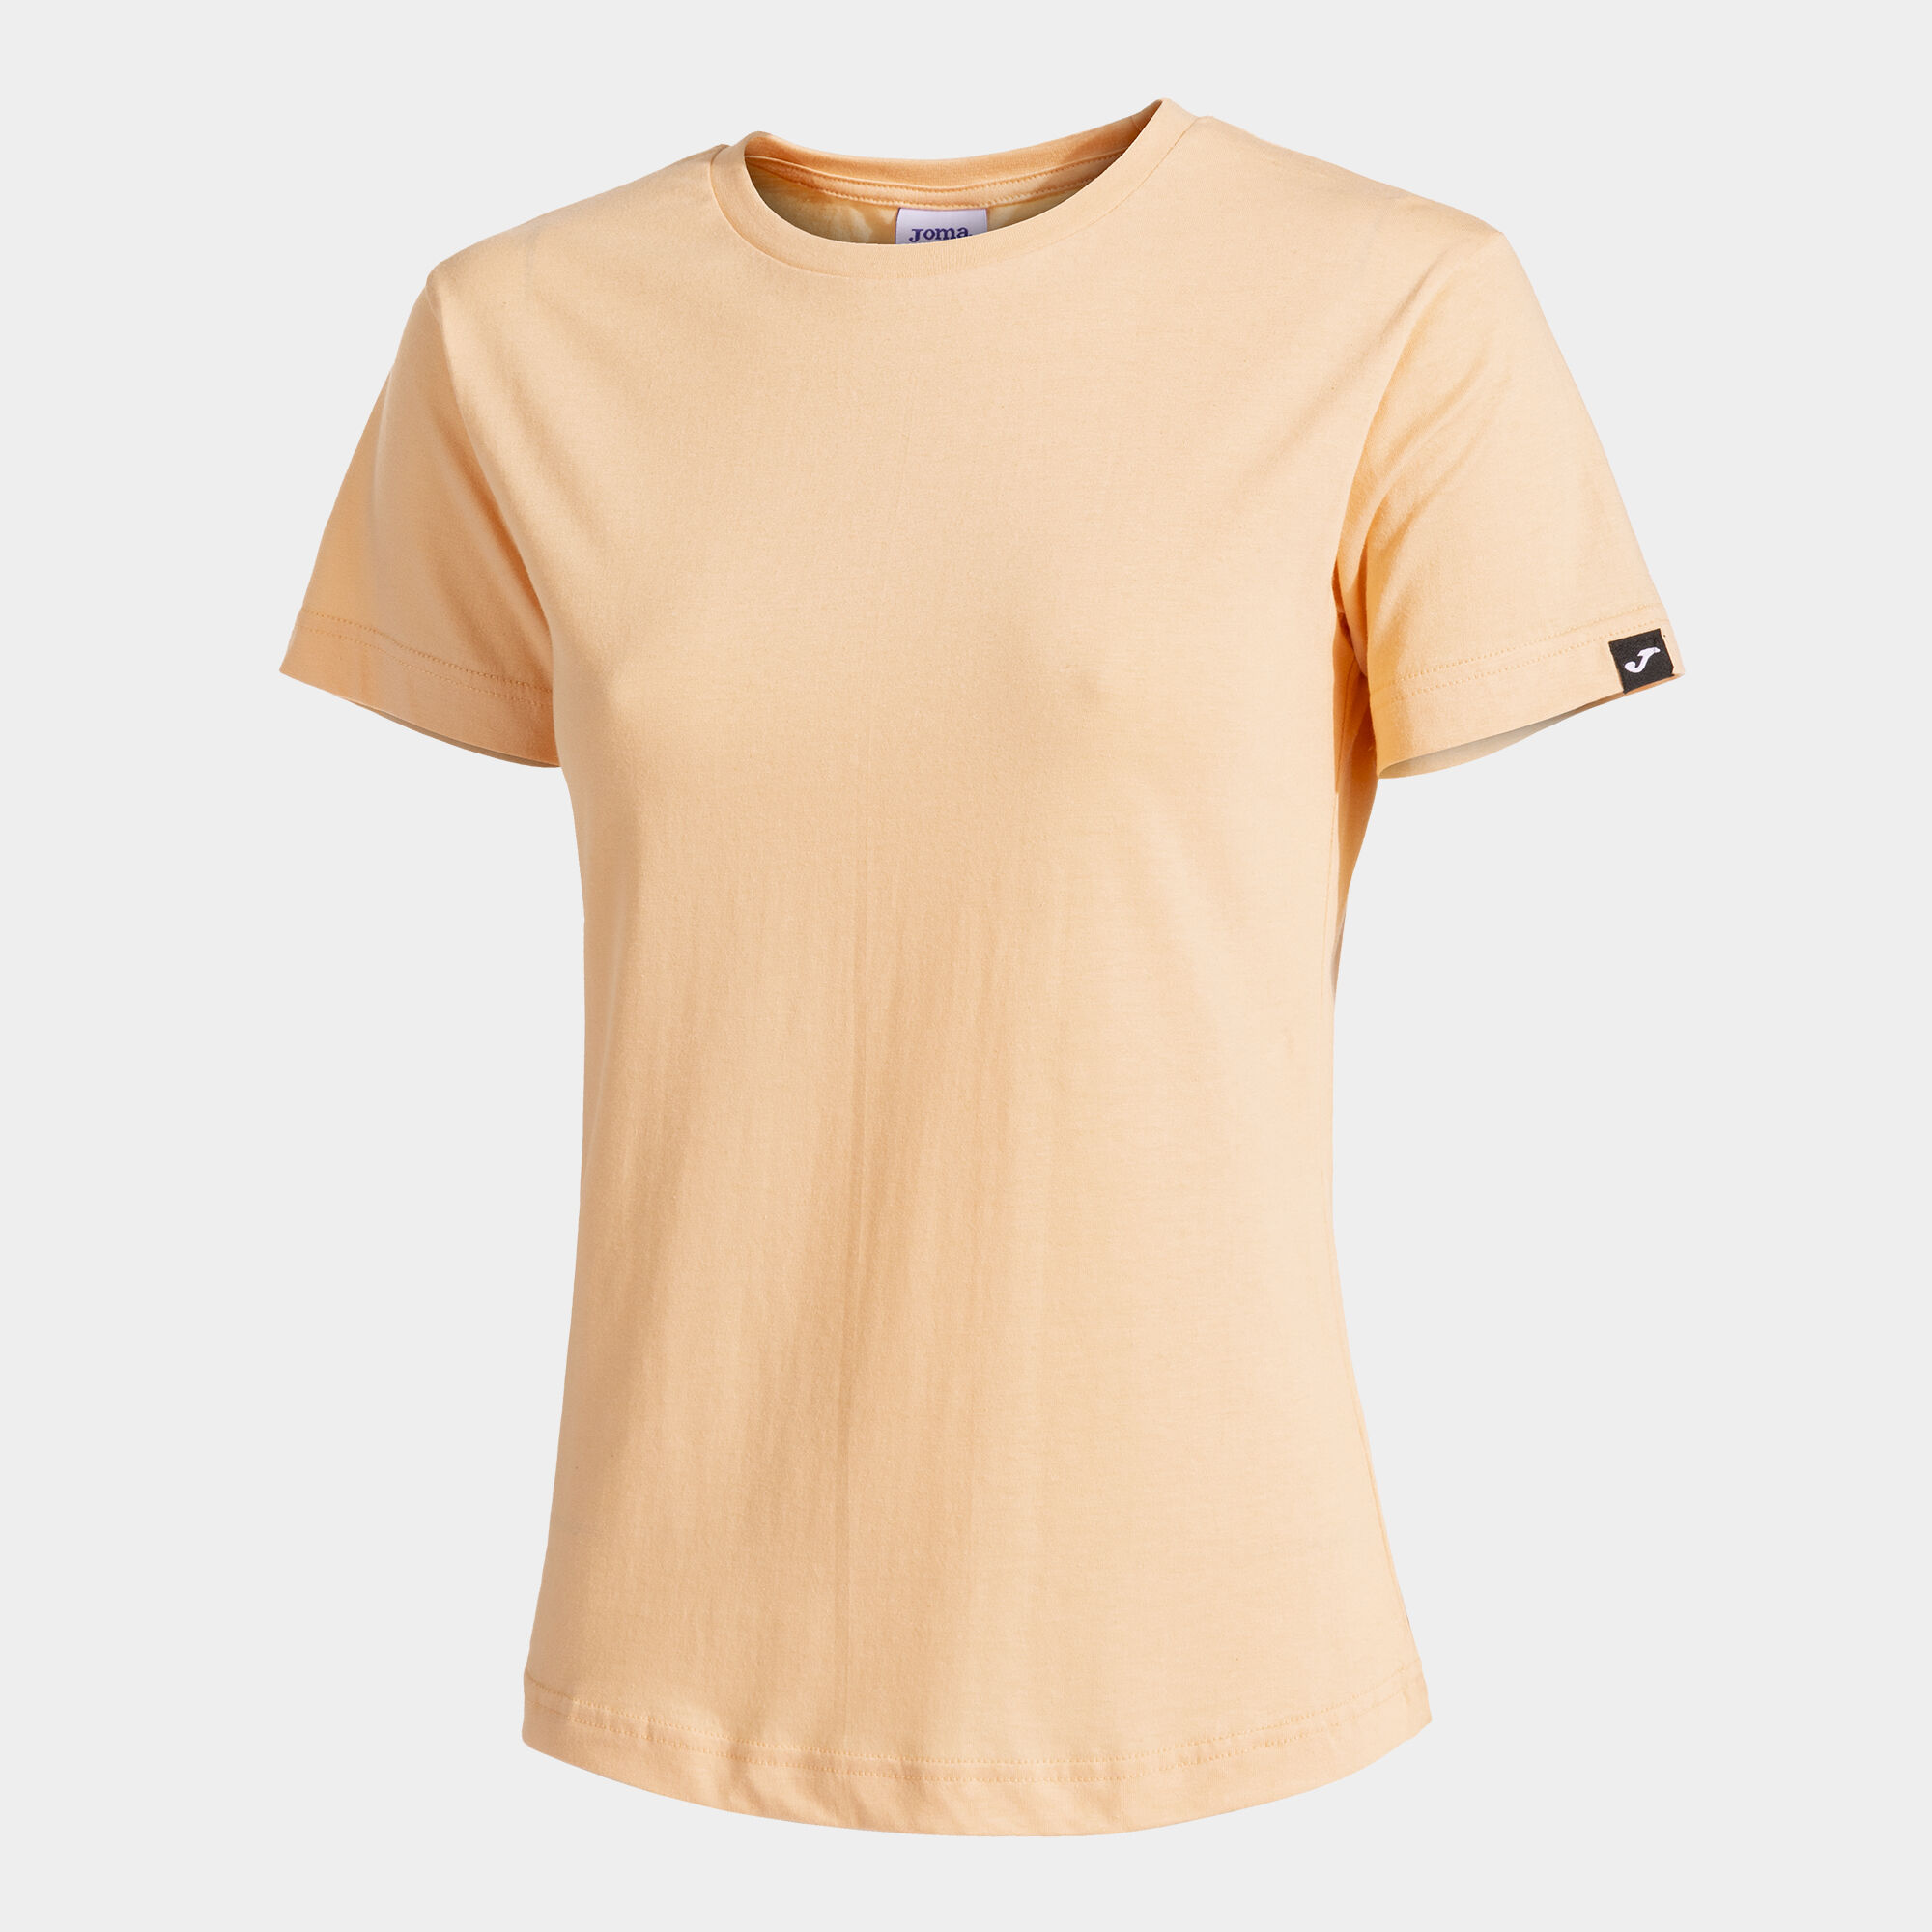 Camiseta manga corta mujer Desert salmón